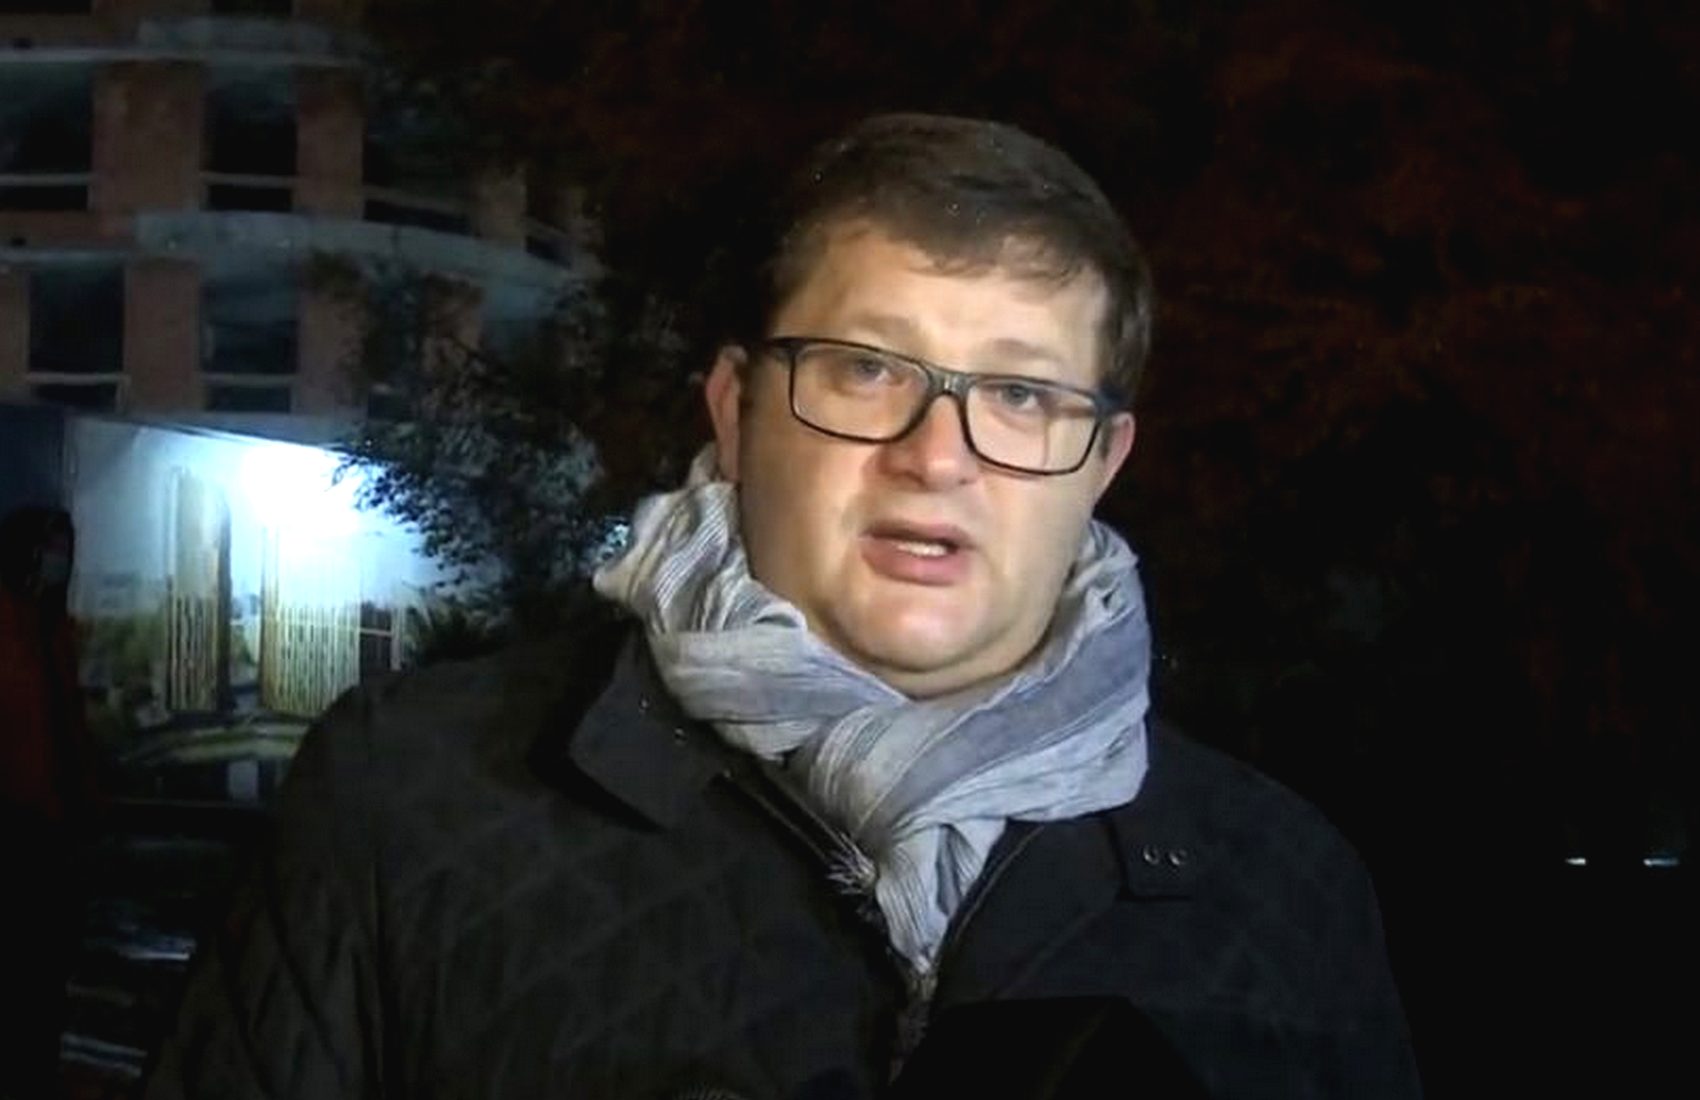 ОП готовит провокации против Порошенко накануне годовщины Майдана — Арьев